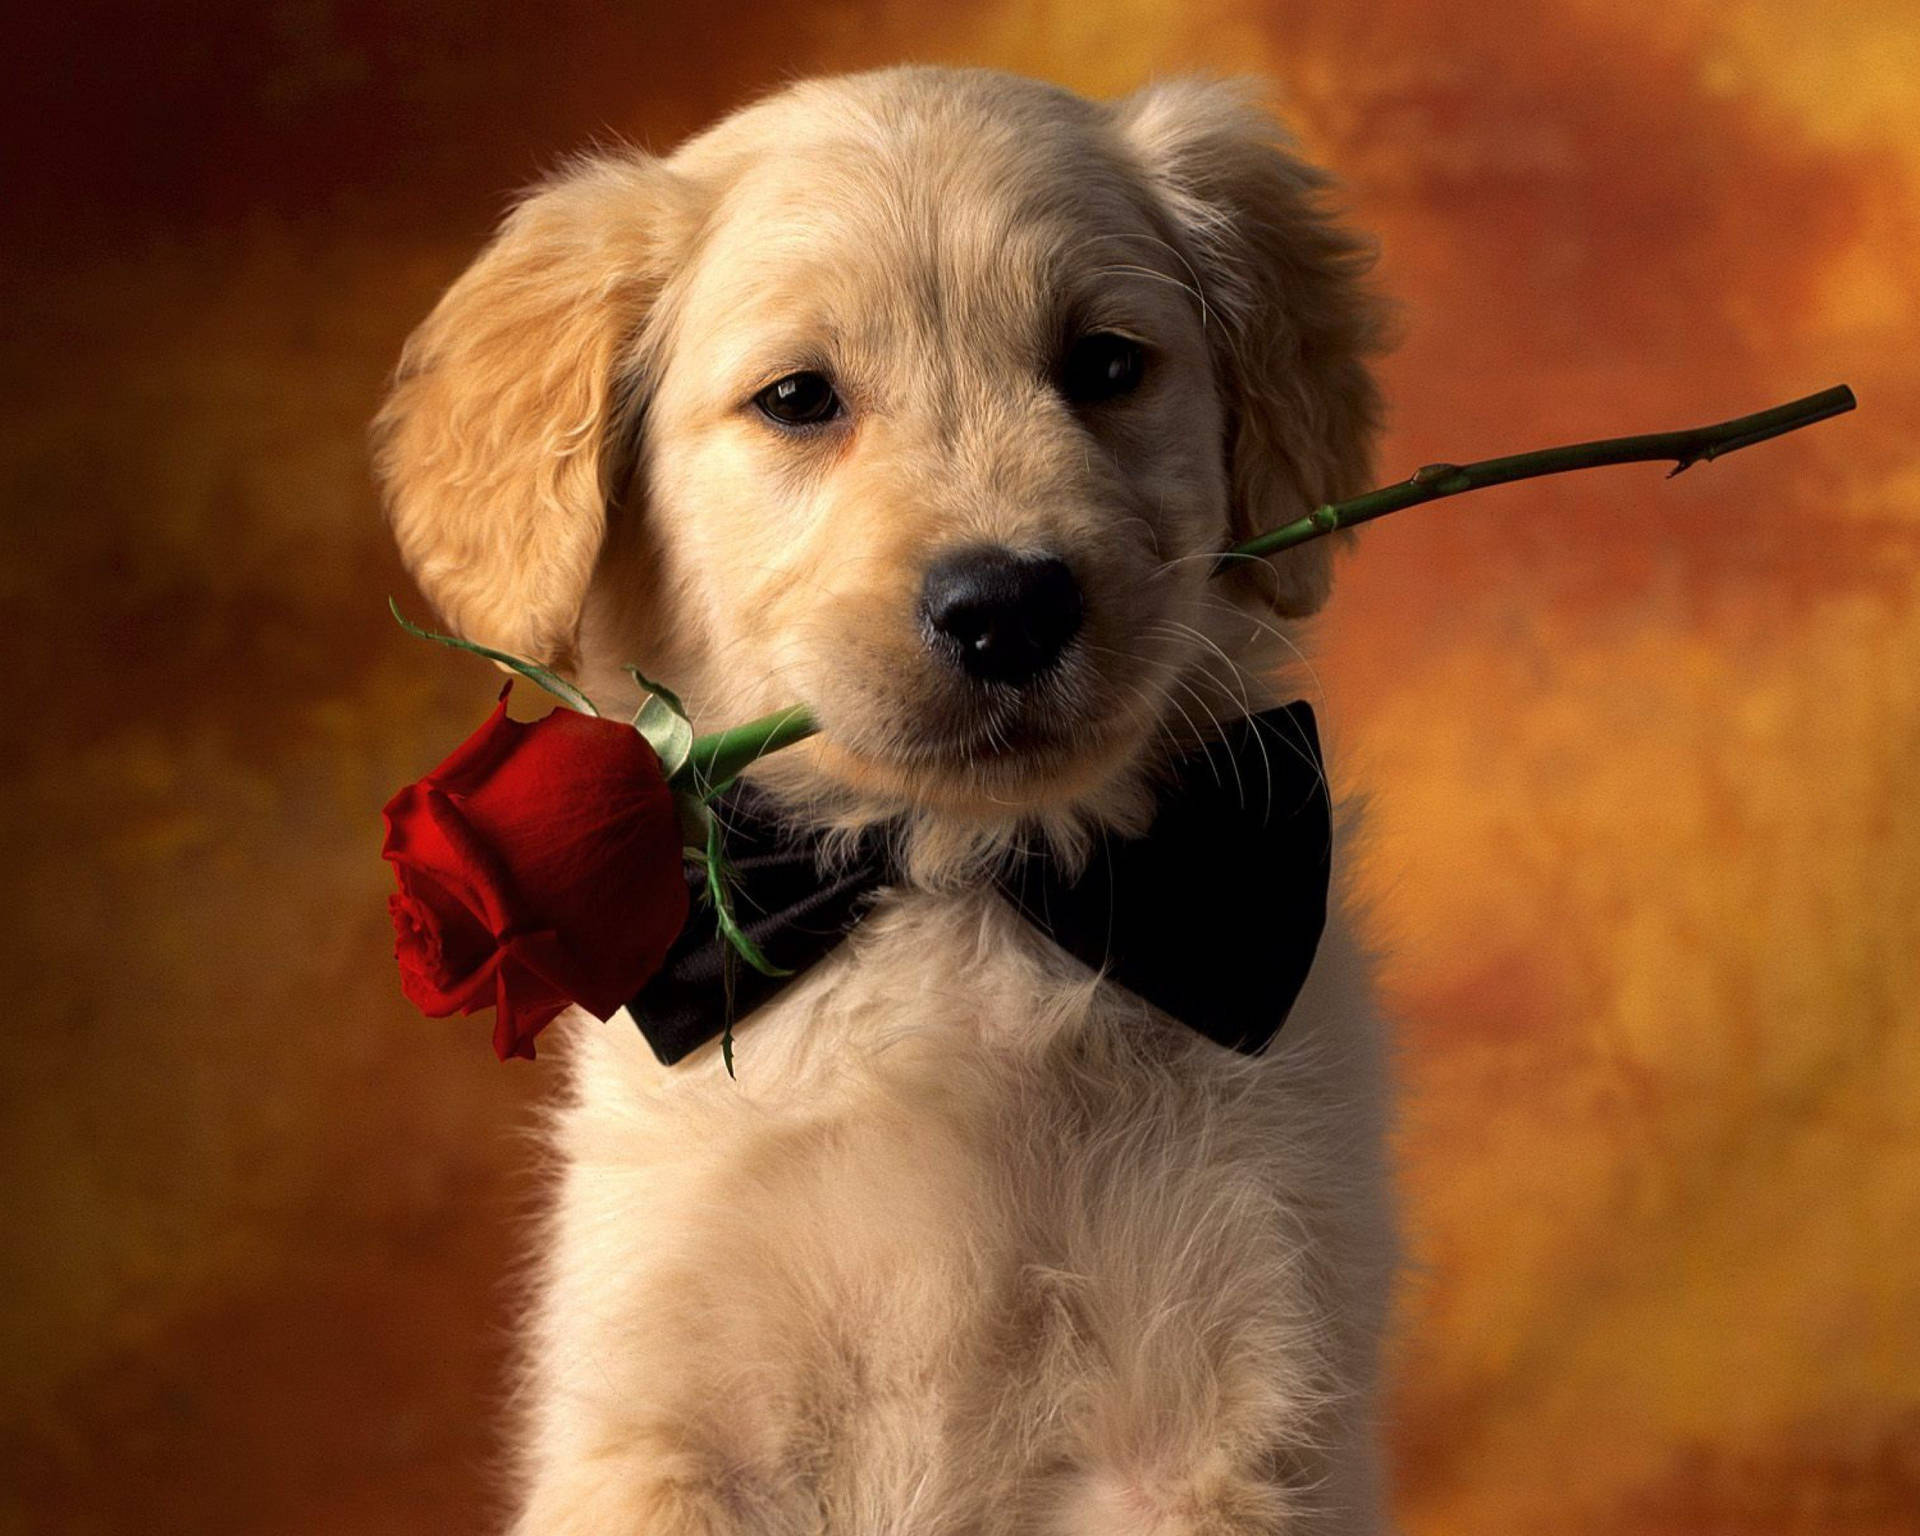 Golden Retriever Puppy Wallpaper: Rất nhiều những chú chó con được sinh ra để trở thành những người bạn thân thiết. Đặc biệt, những chú chó Retriever có một sức hút đặc biệt với các bạn yêu chó. Hãy chiêm ngưỡng hình nền chó Retriever sở hữu vẻ đẹp tuyệt vời và tràn đầy sức sống!